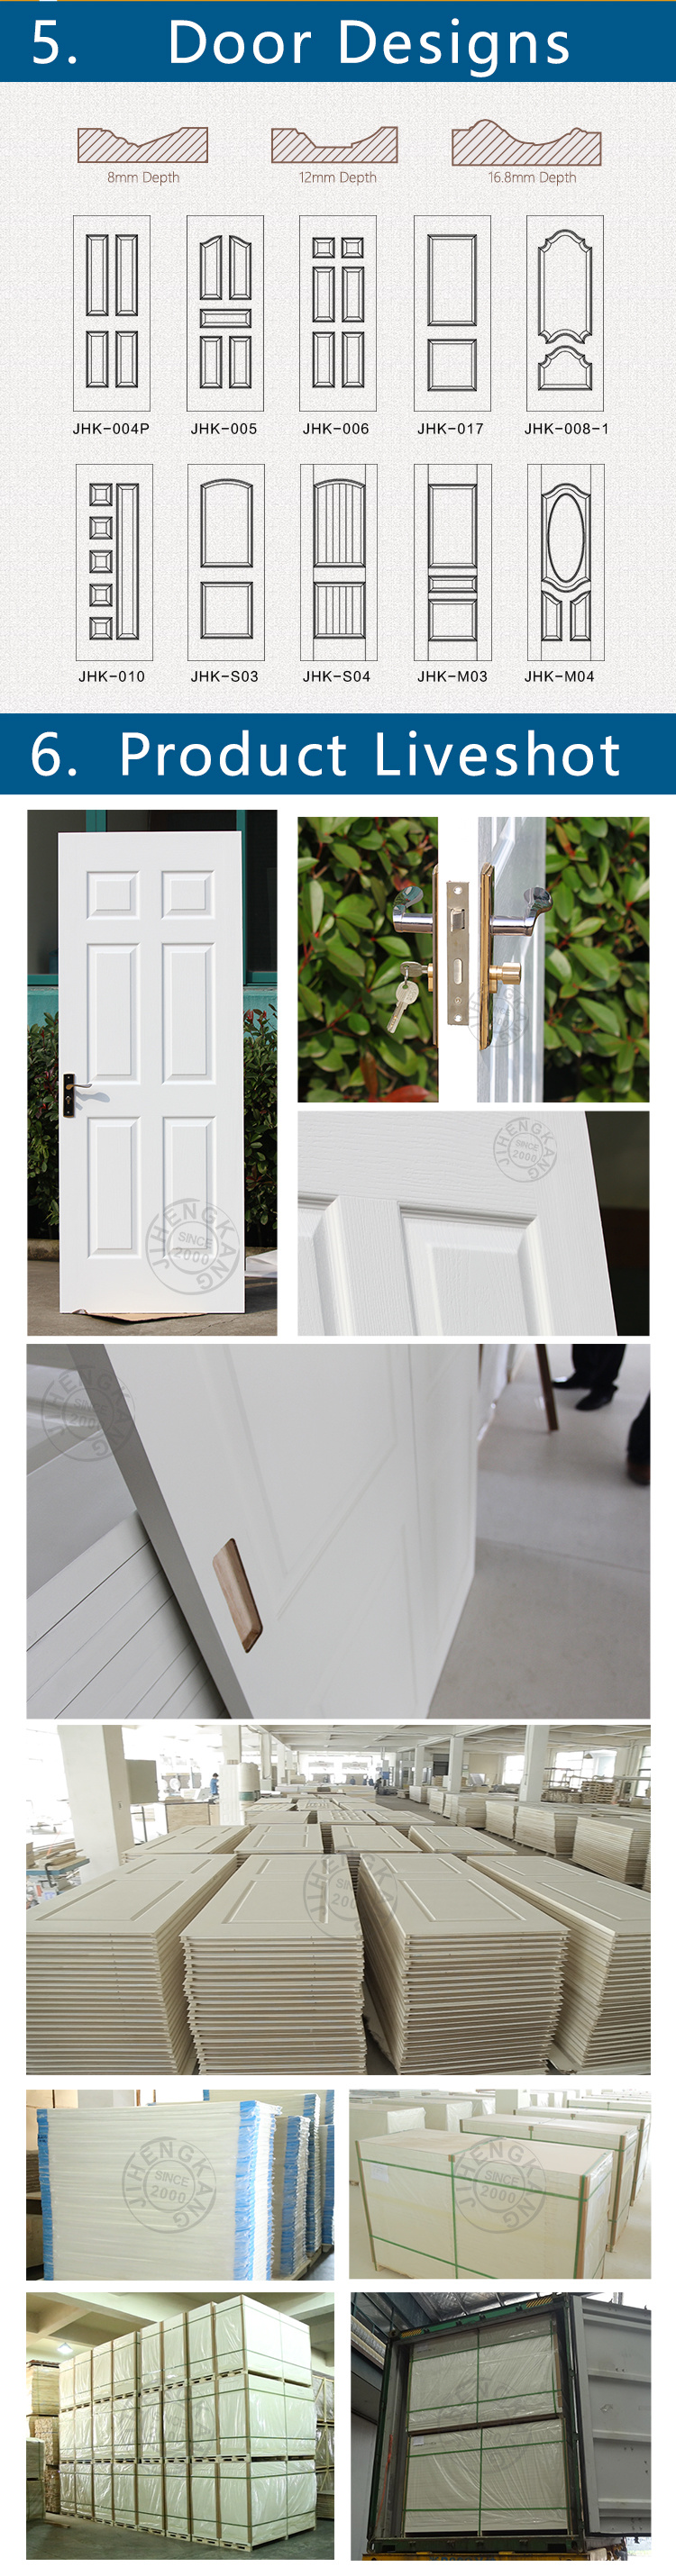 Jhk-017 Flush White Primer Finished New Molded White Primer Door